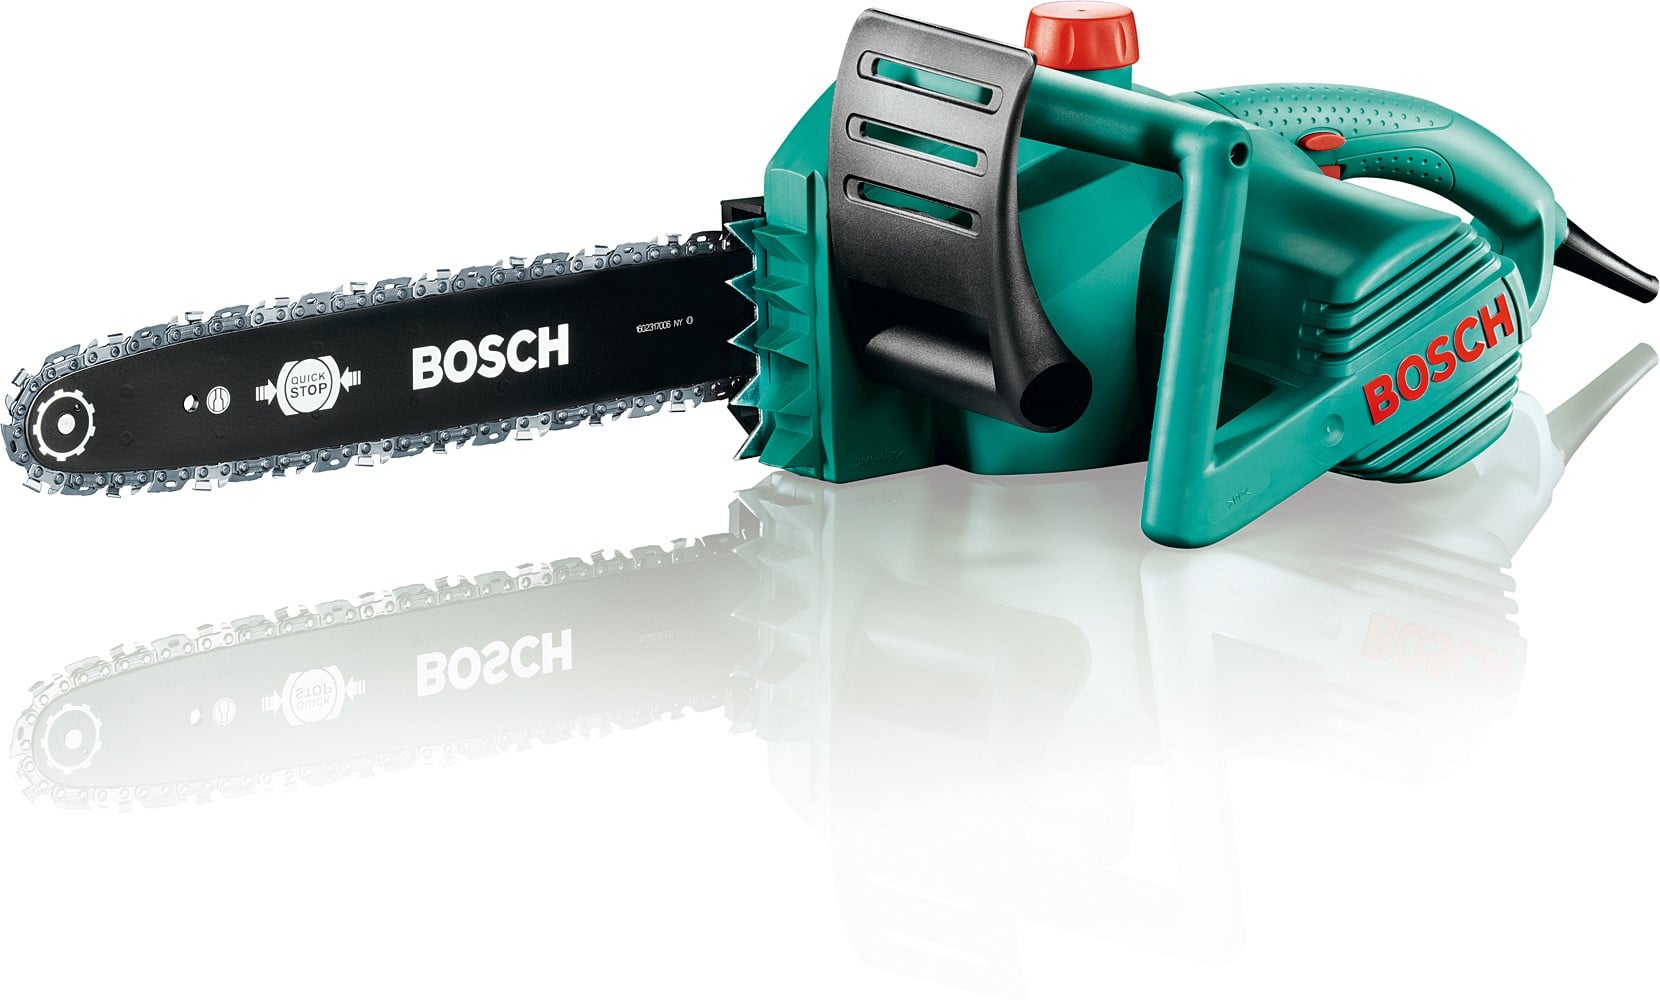 La tronçonneuse électrique Bosch AKE 35S - Un Bon Investissement !? 